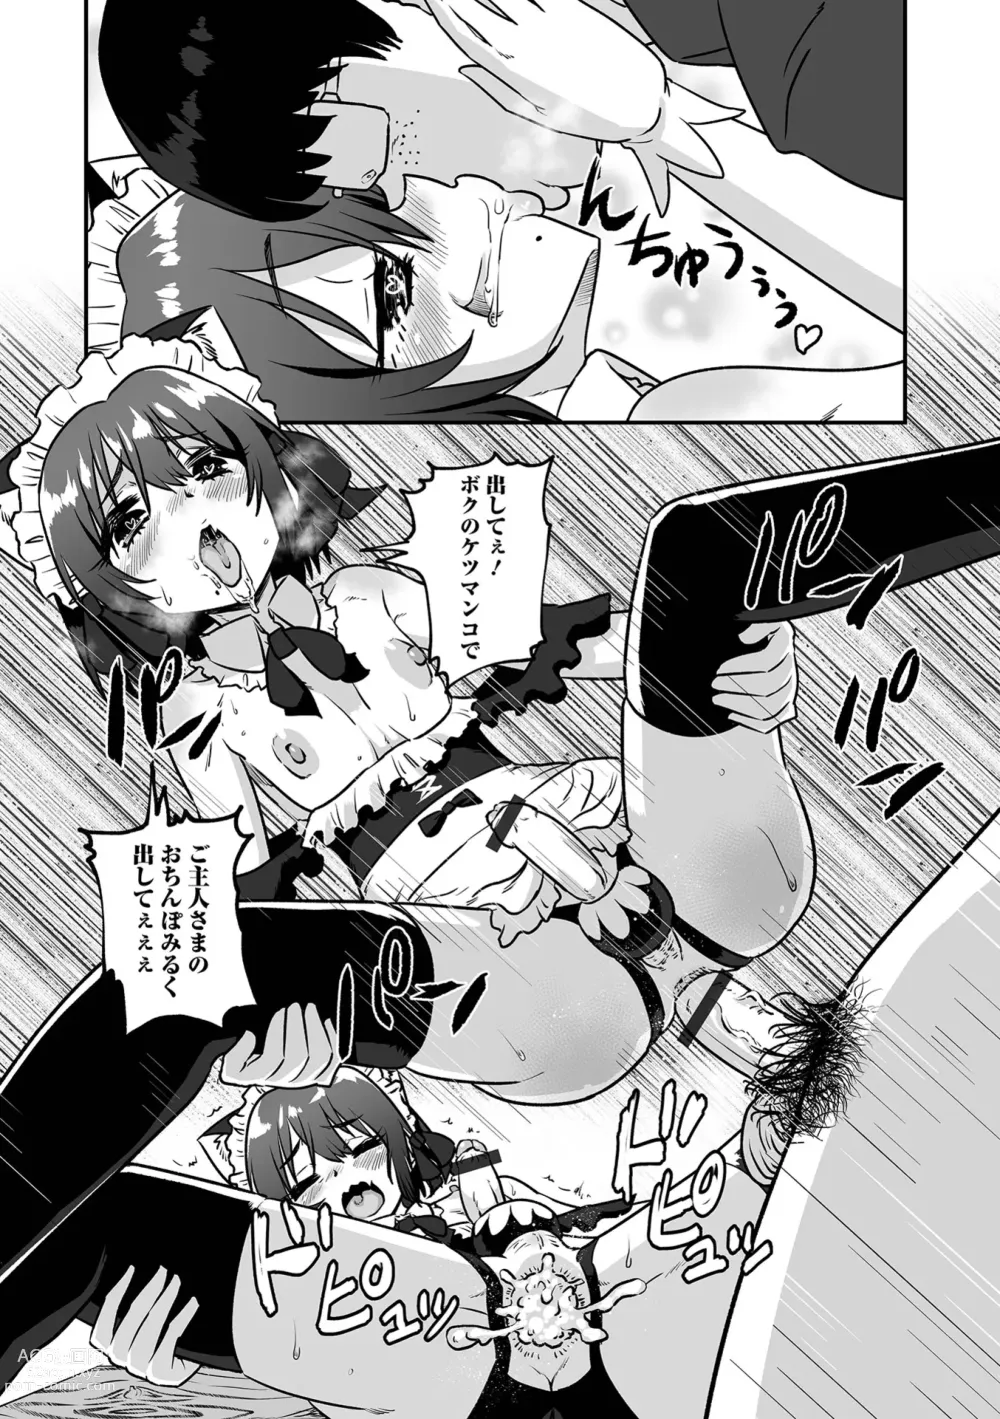 Page 13 of manga Kawaii Otokonoko wa Suki Desuka?